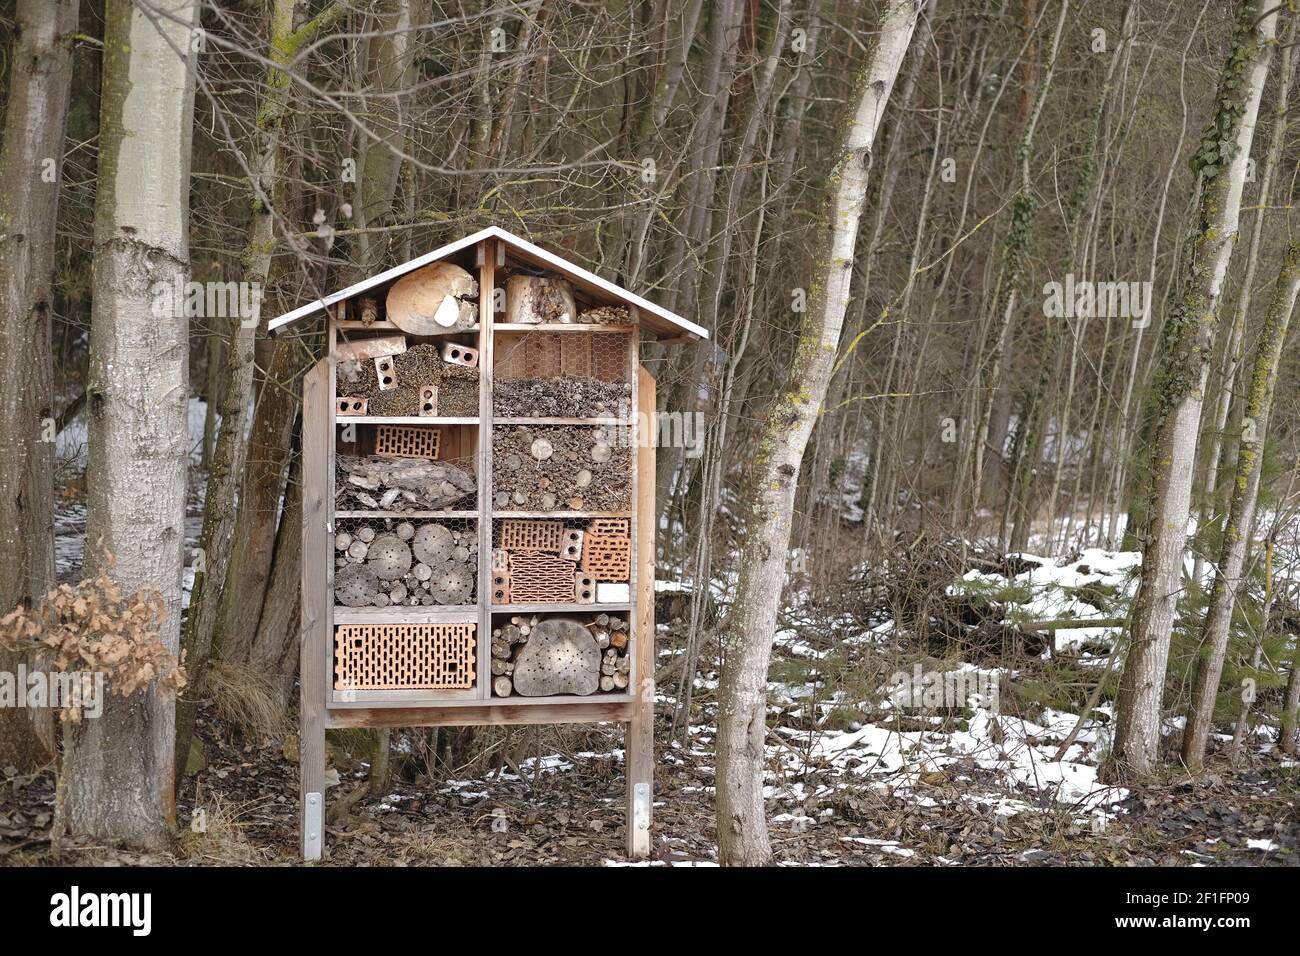 Insektenhaus im Frühlingswald.Ökologie und Naturschutz Konzept. Umweltschutz. Insekten in der Natur Stockfoto